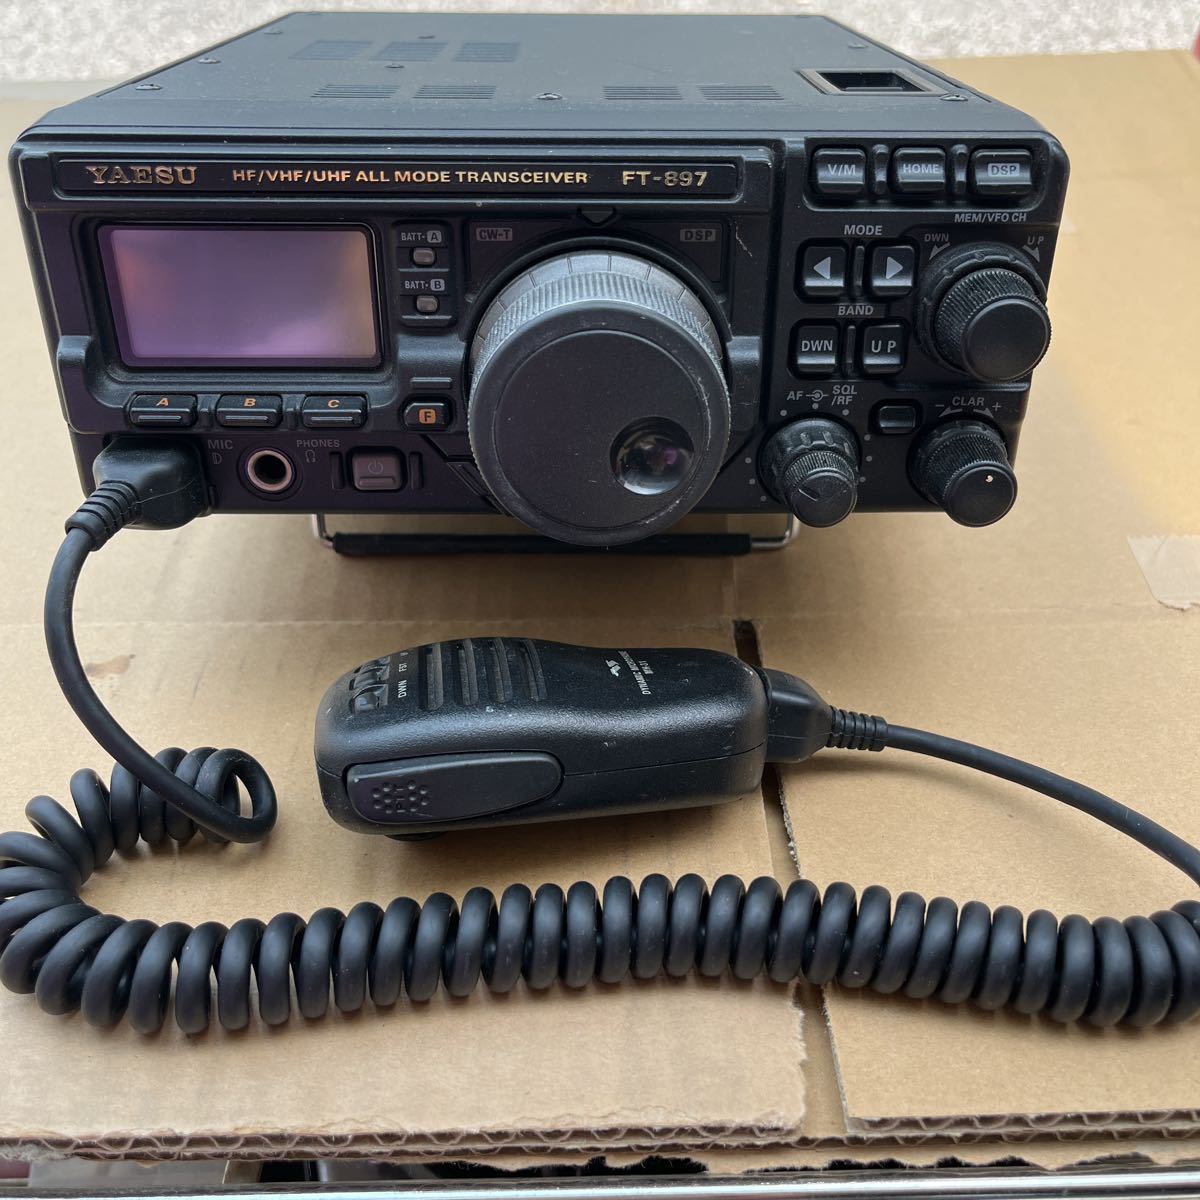 ヤエス 八重洲 無線 FT-897 YAESU HF/VHF/UHF ALLMODE TRANSCEIVER